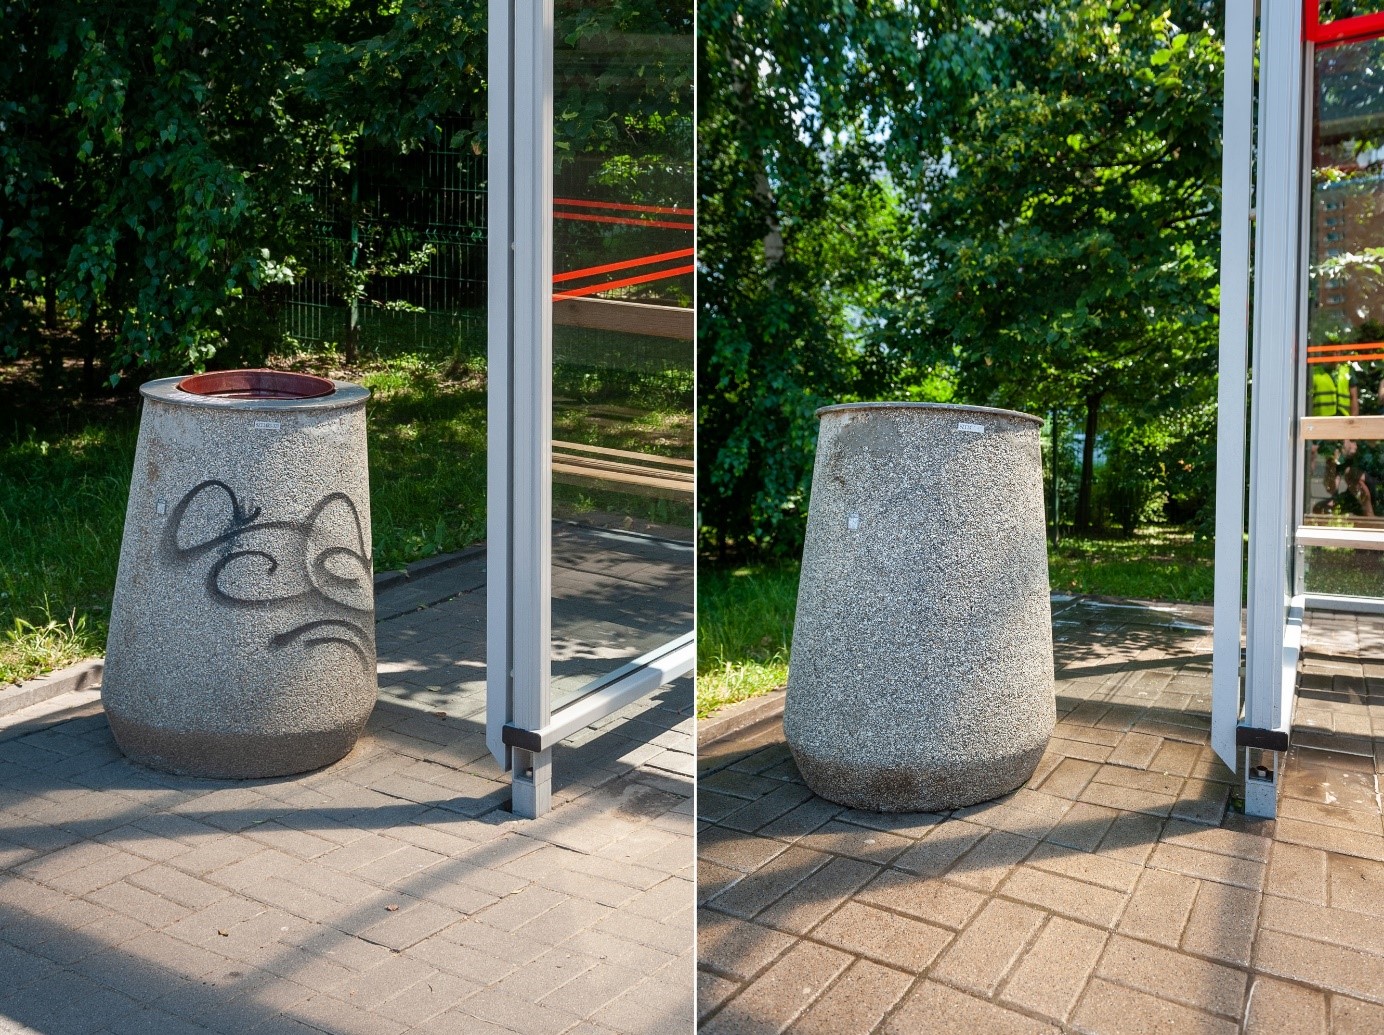 Z lewej pomazany betonowy kosz na przystanku komunikacji miejskiej, po prawej zdjęcie tego samego kosza po umyciu, oczyszczonego z pseudograffiti.